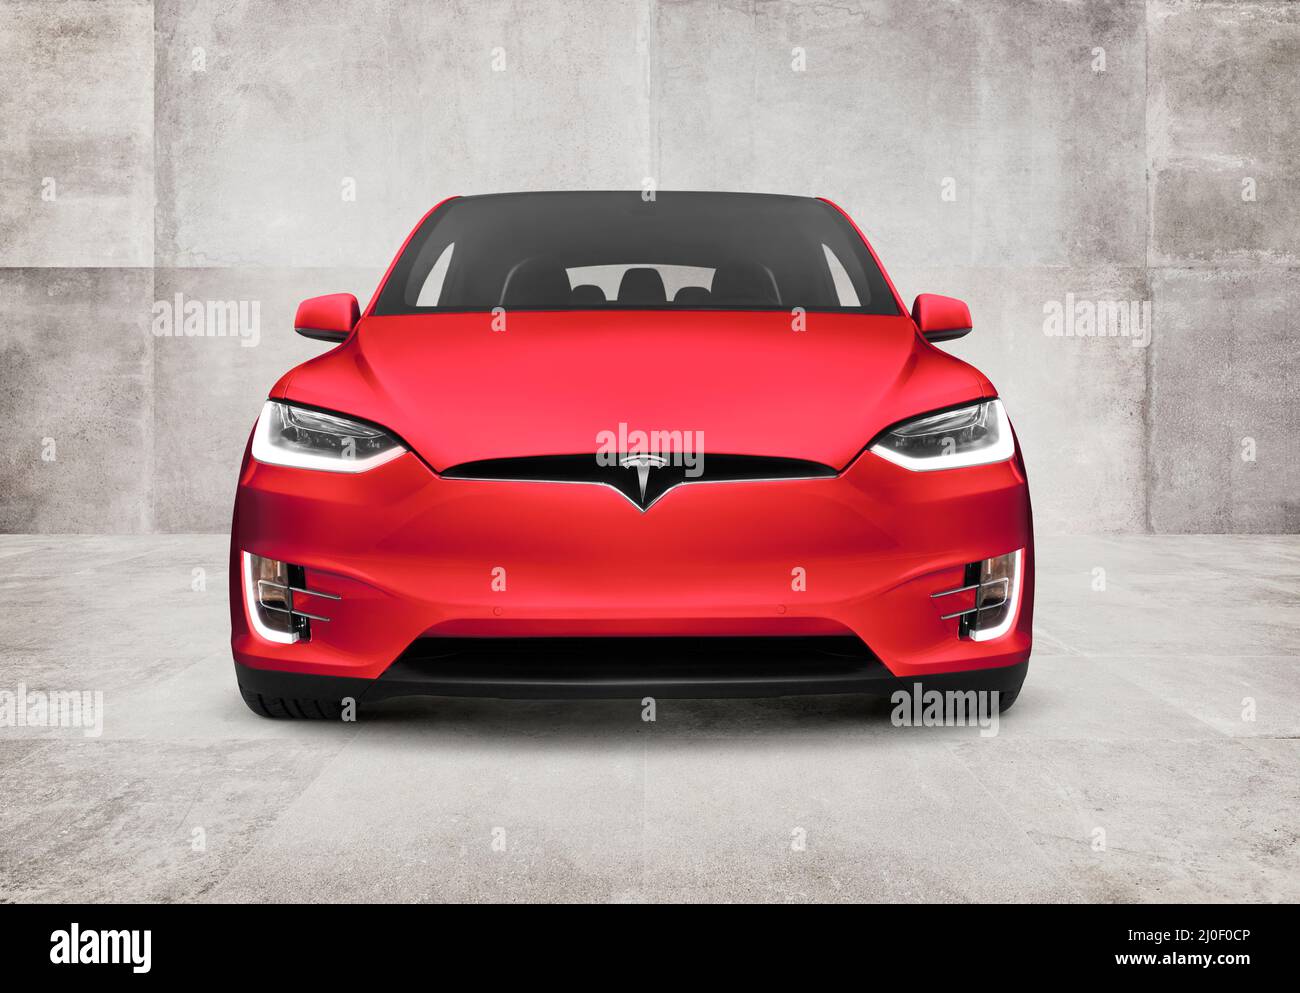 Vista frontal del vehículo eléctrico SUV de lujo Red Tesla Model X sobre fondo de pared de hormigón Foto de stock